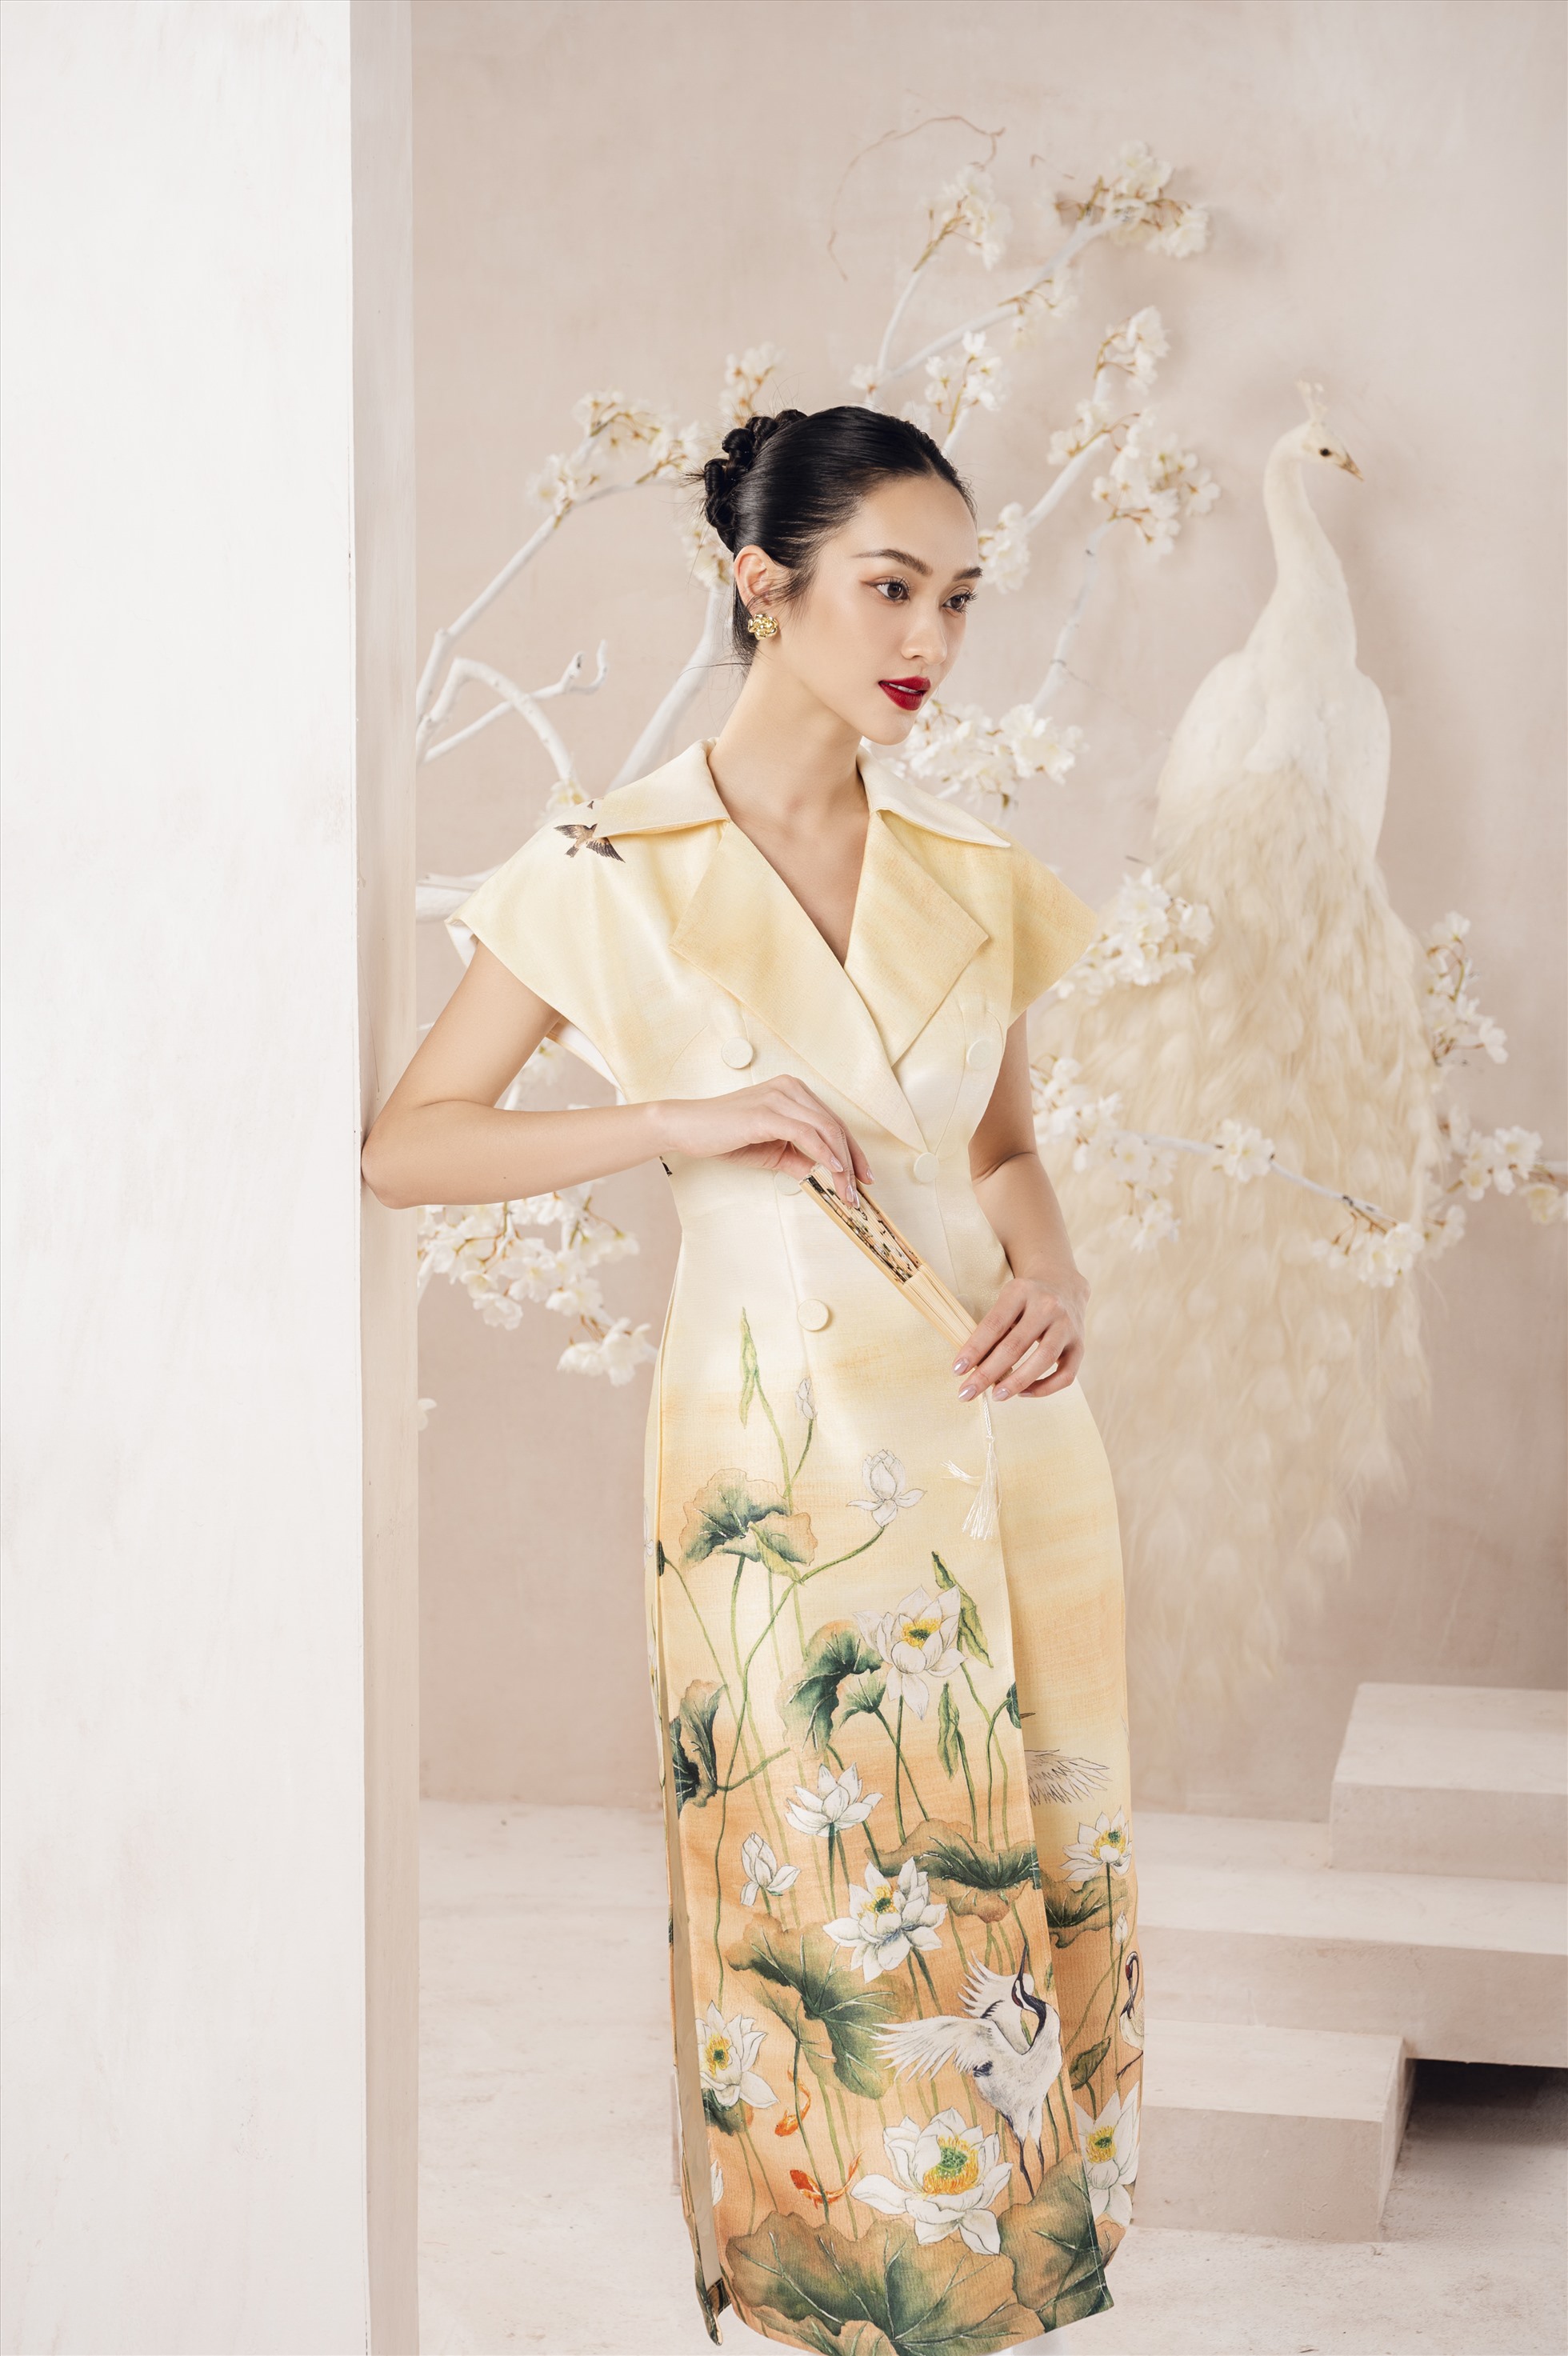 Hoạt tiết chim khổng tước và hoa sen xuất hiện trong nhiều thiết kế của NTK Hà Thanh Việt. Ảnh: Nhà thiết kế cung cấp.